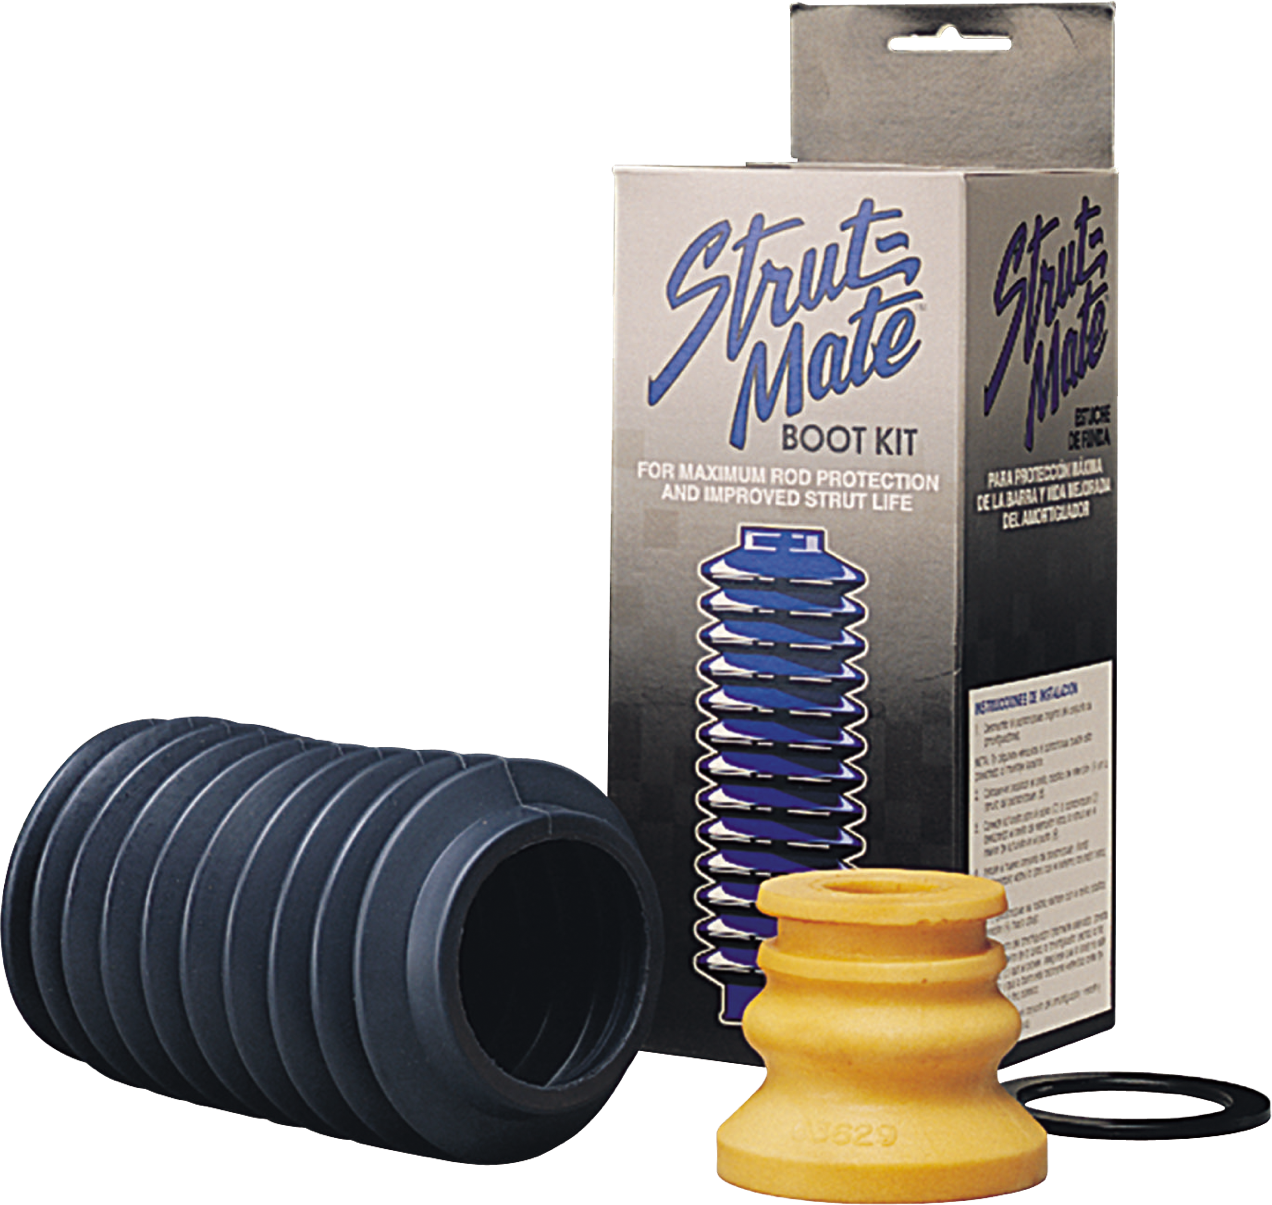 Strut-Mate Boot Kit